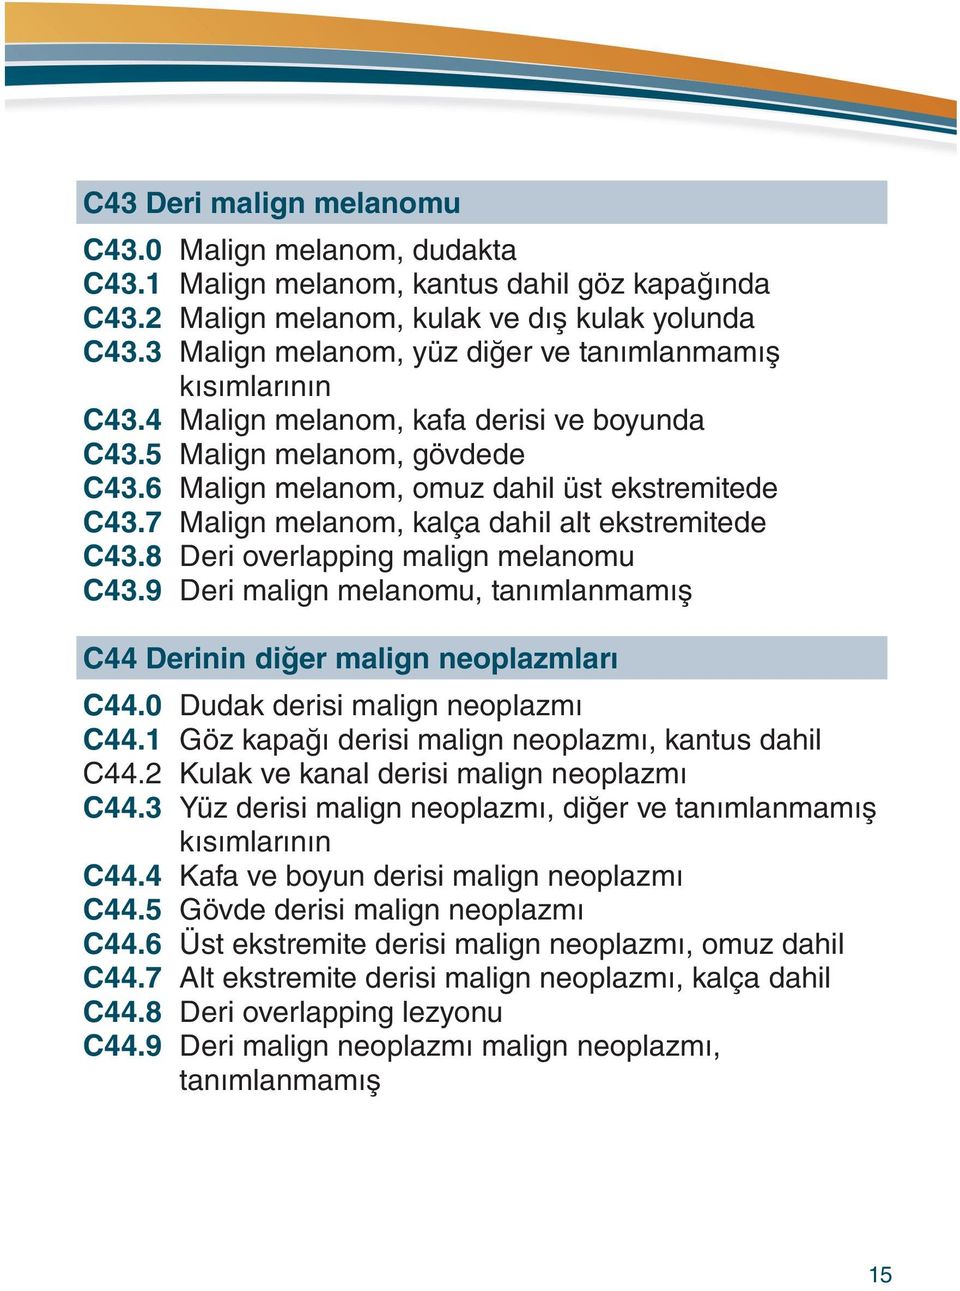 7 Malign melanom, kalça dahil alt ekstremitede C43.8 Deri overlapping malign melanomu C43.9 Deri malign melanomu, tanımlanmamış C44 Derinin diğer malign neoplazmları C44.